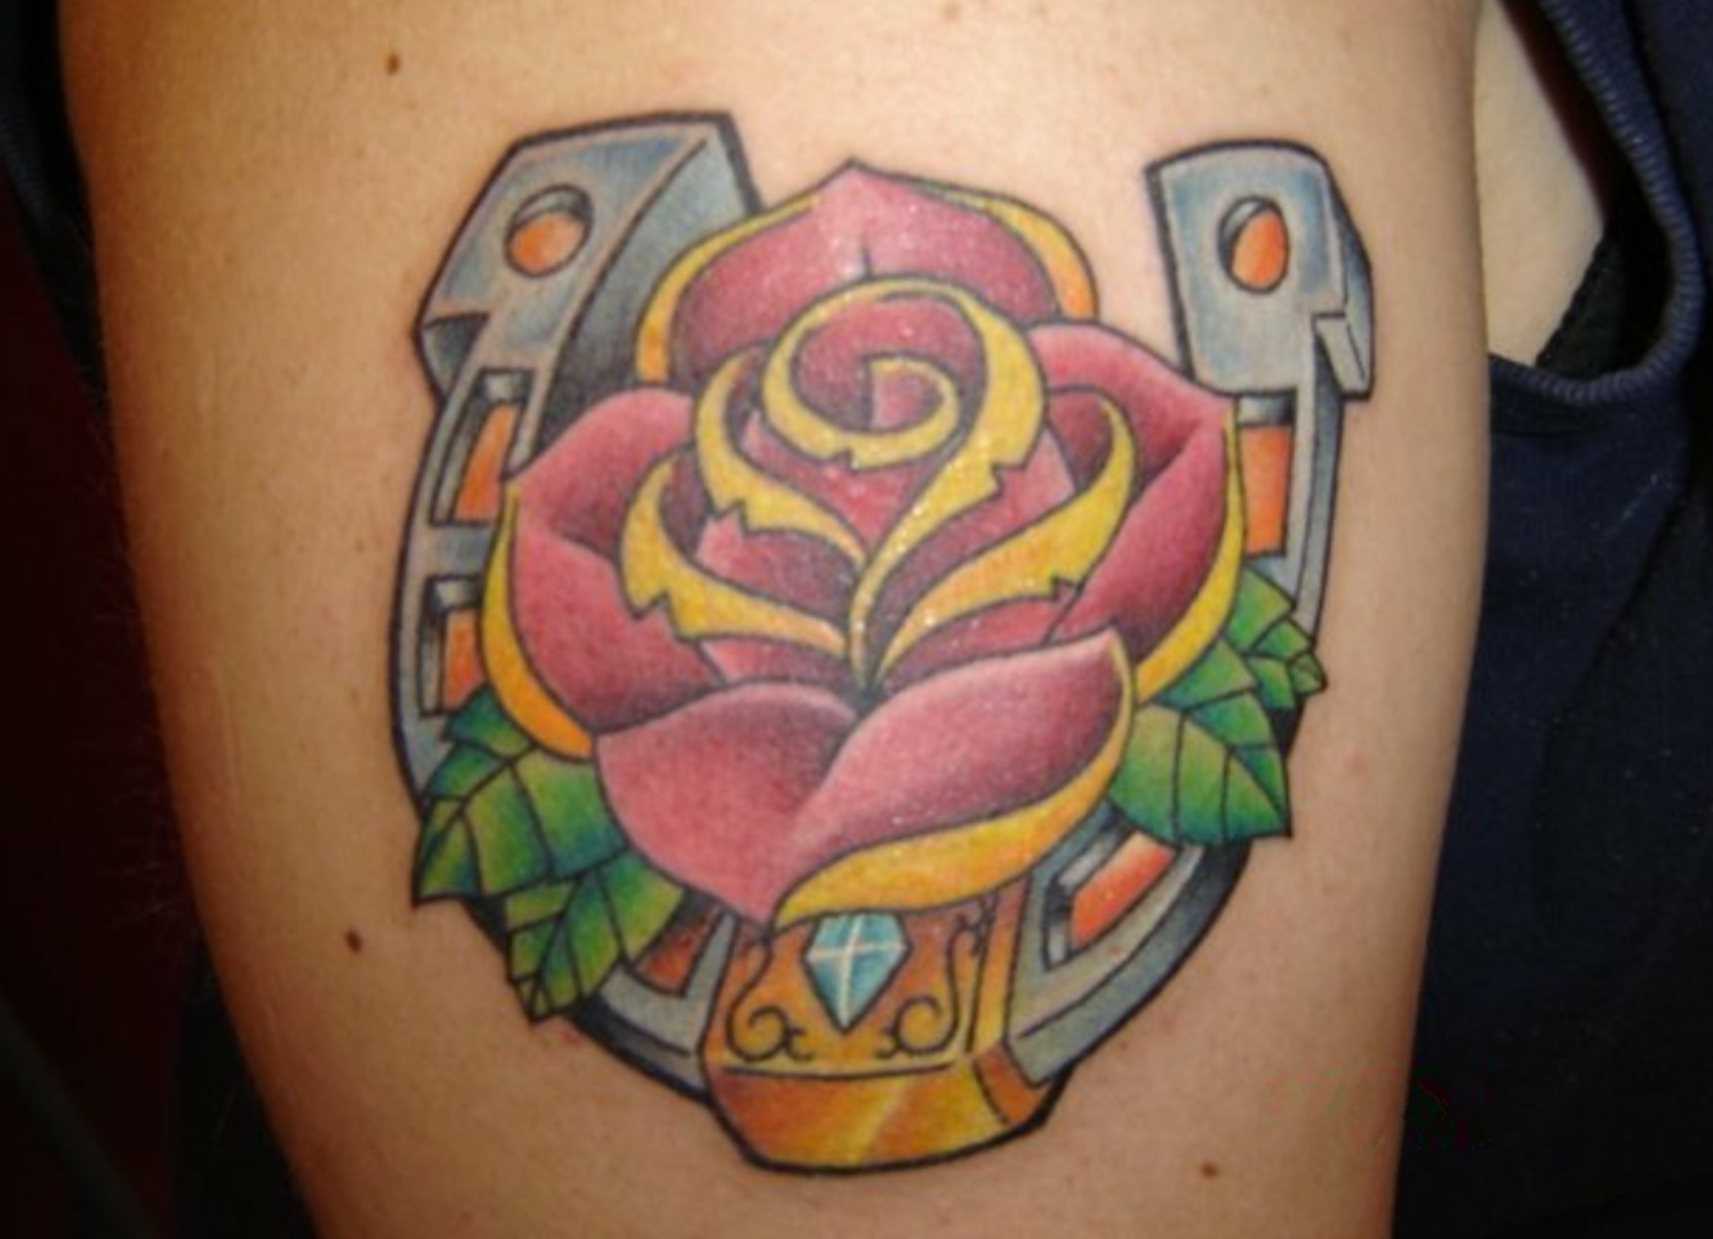 A tatuagem no ombro da menina - ferradura e rosa